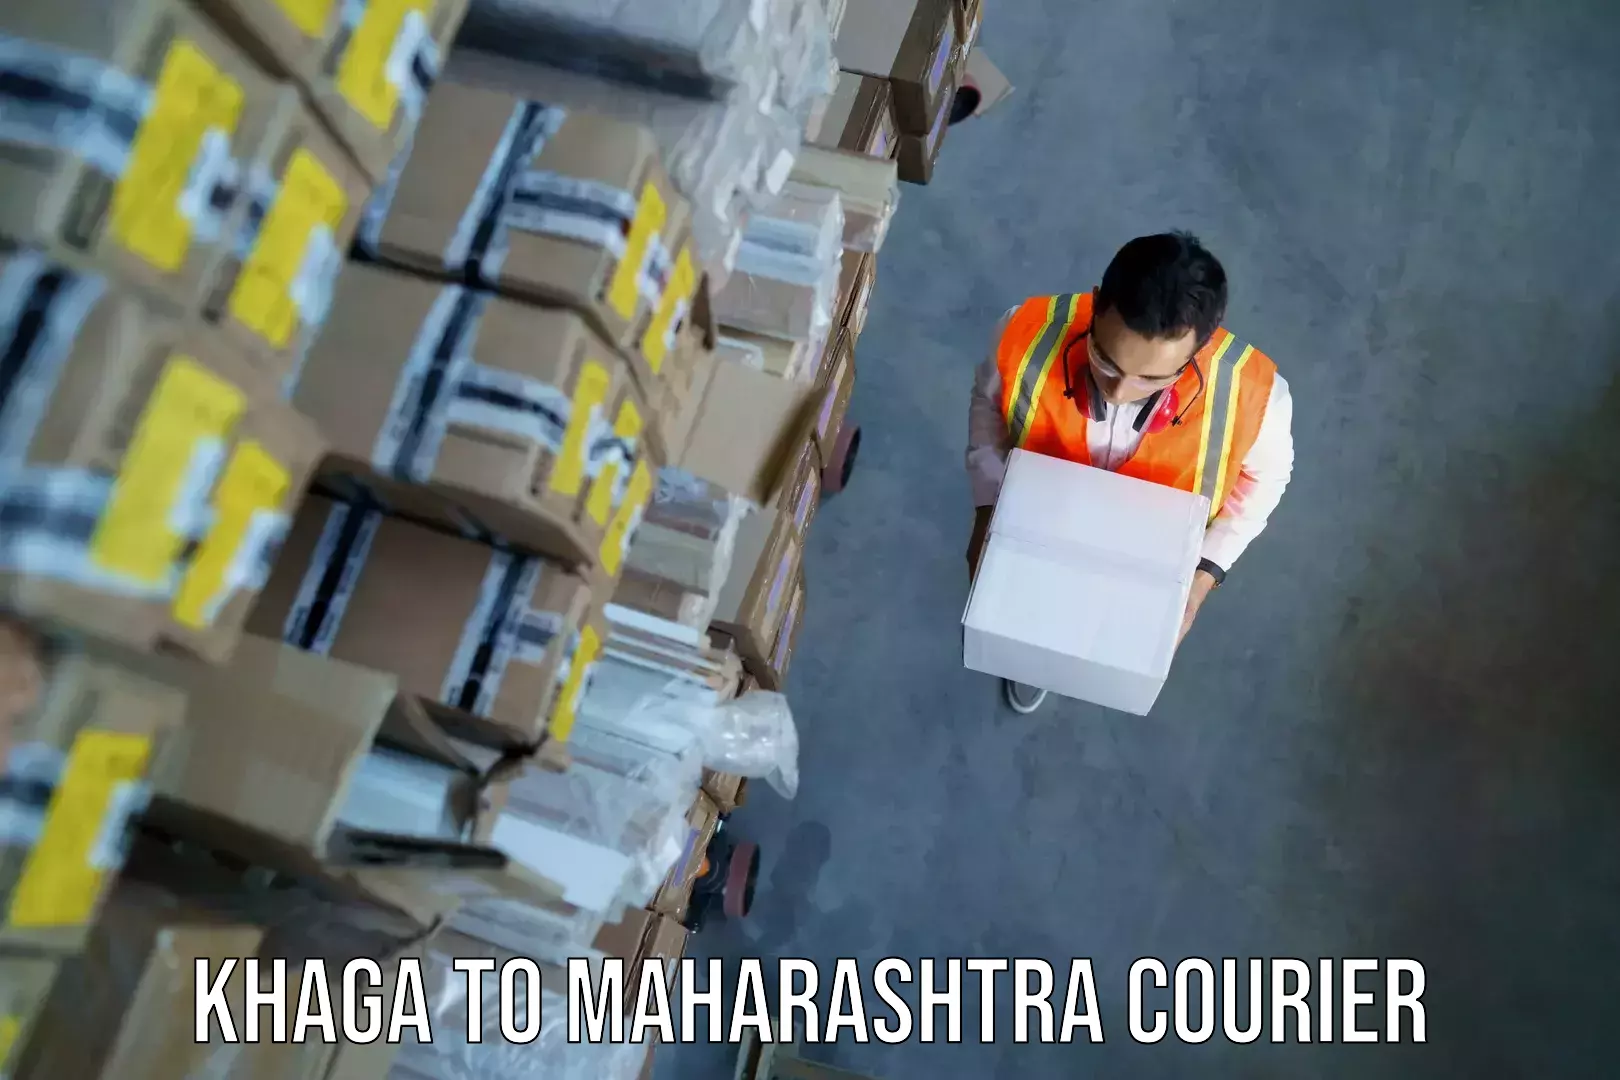 Electronic items luggage shipping Khaga to Maharashtra